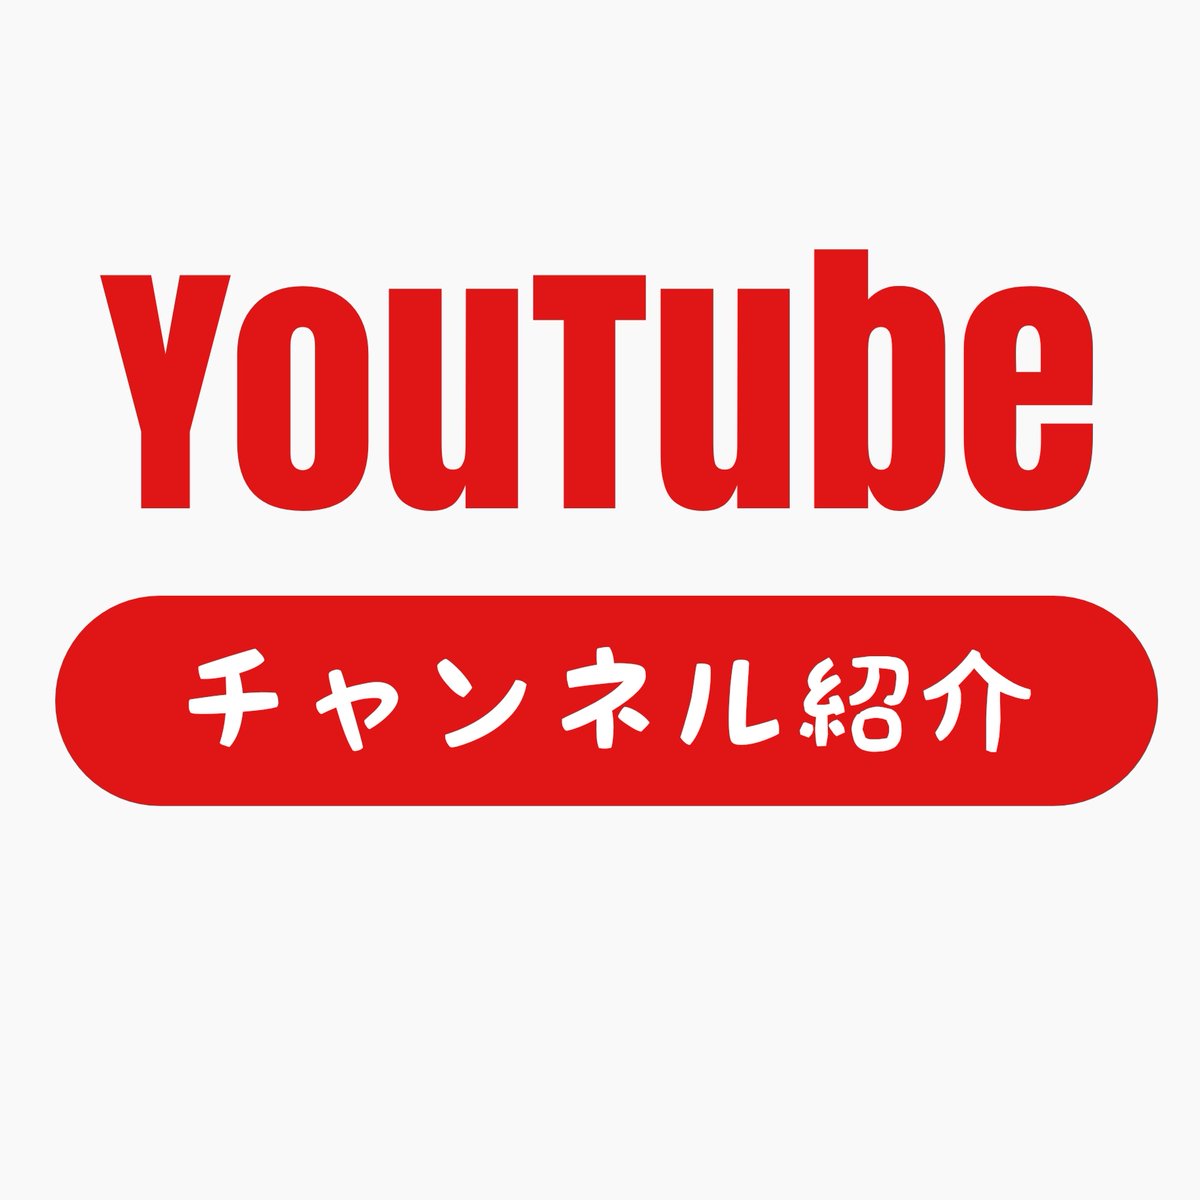 Youtube チャンネル紹介 Youtube5info Twitter